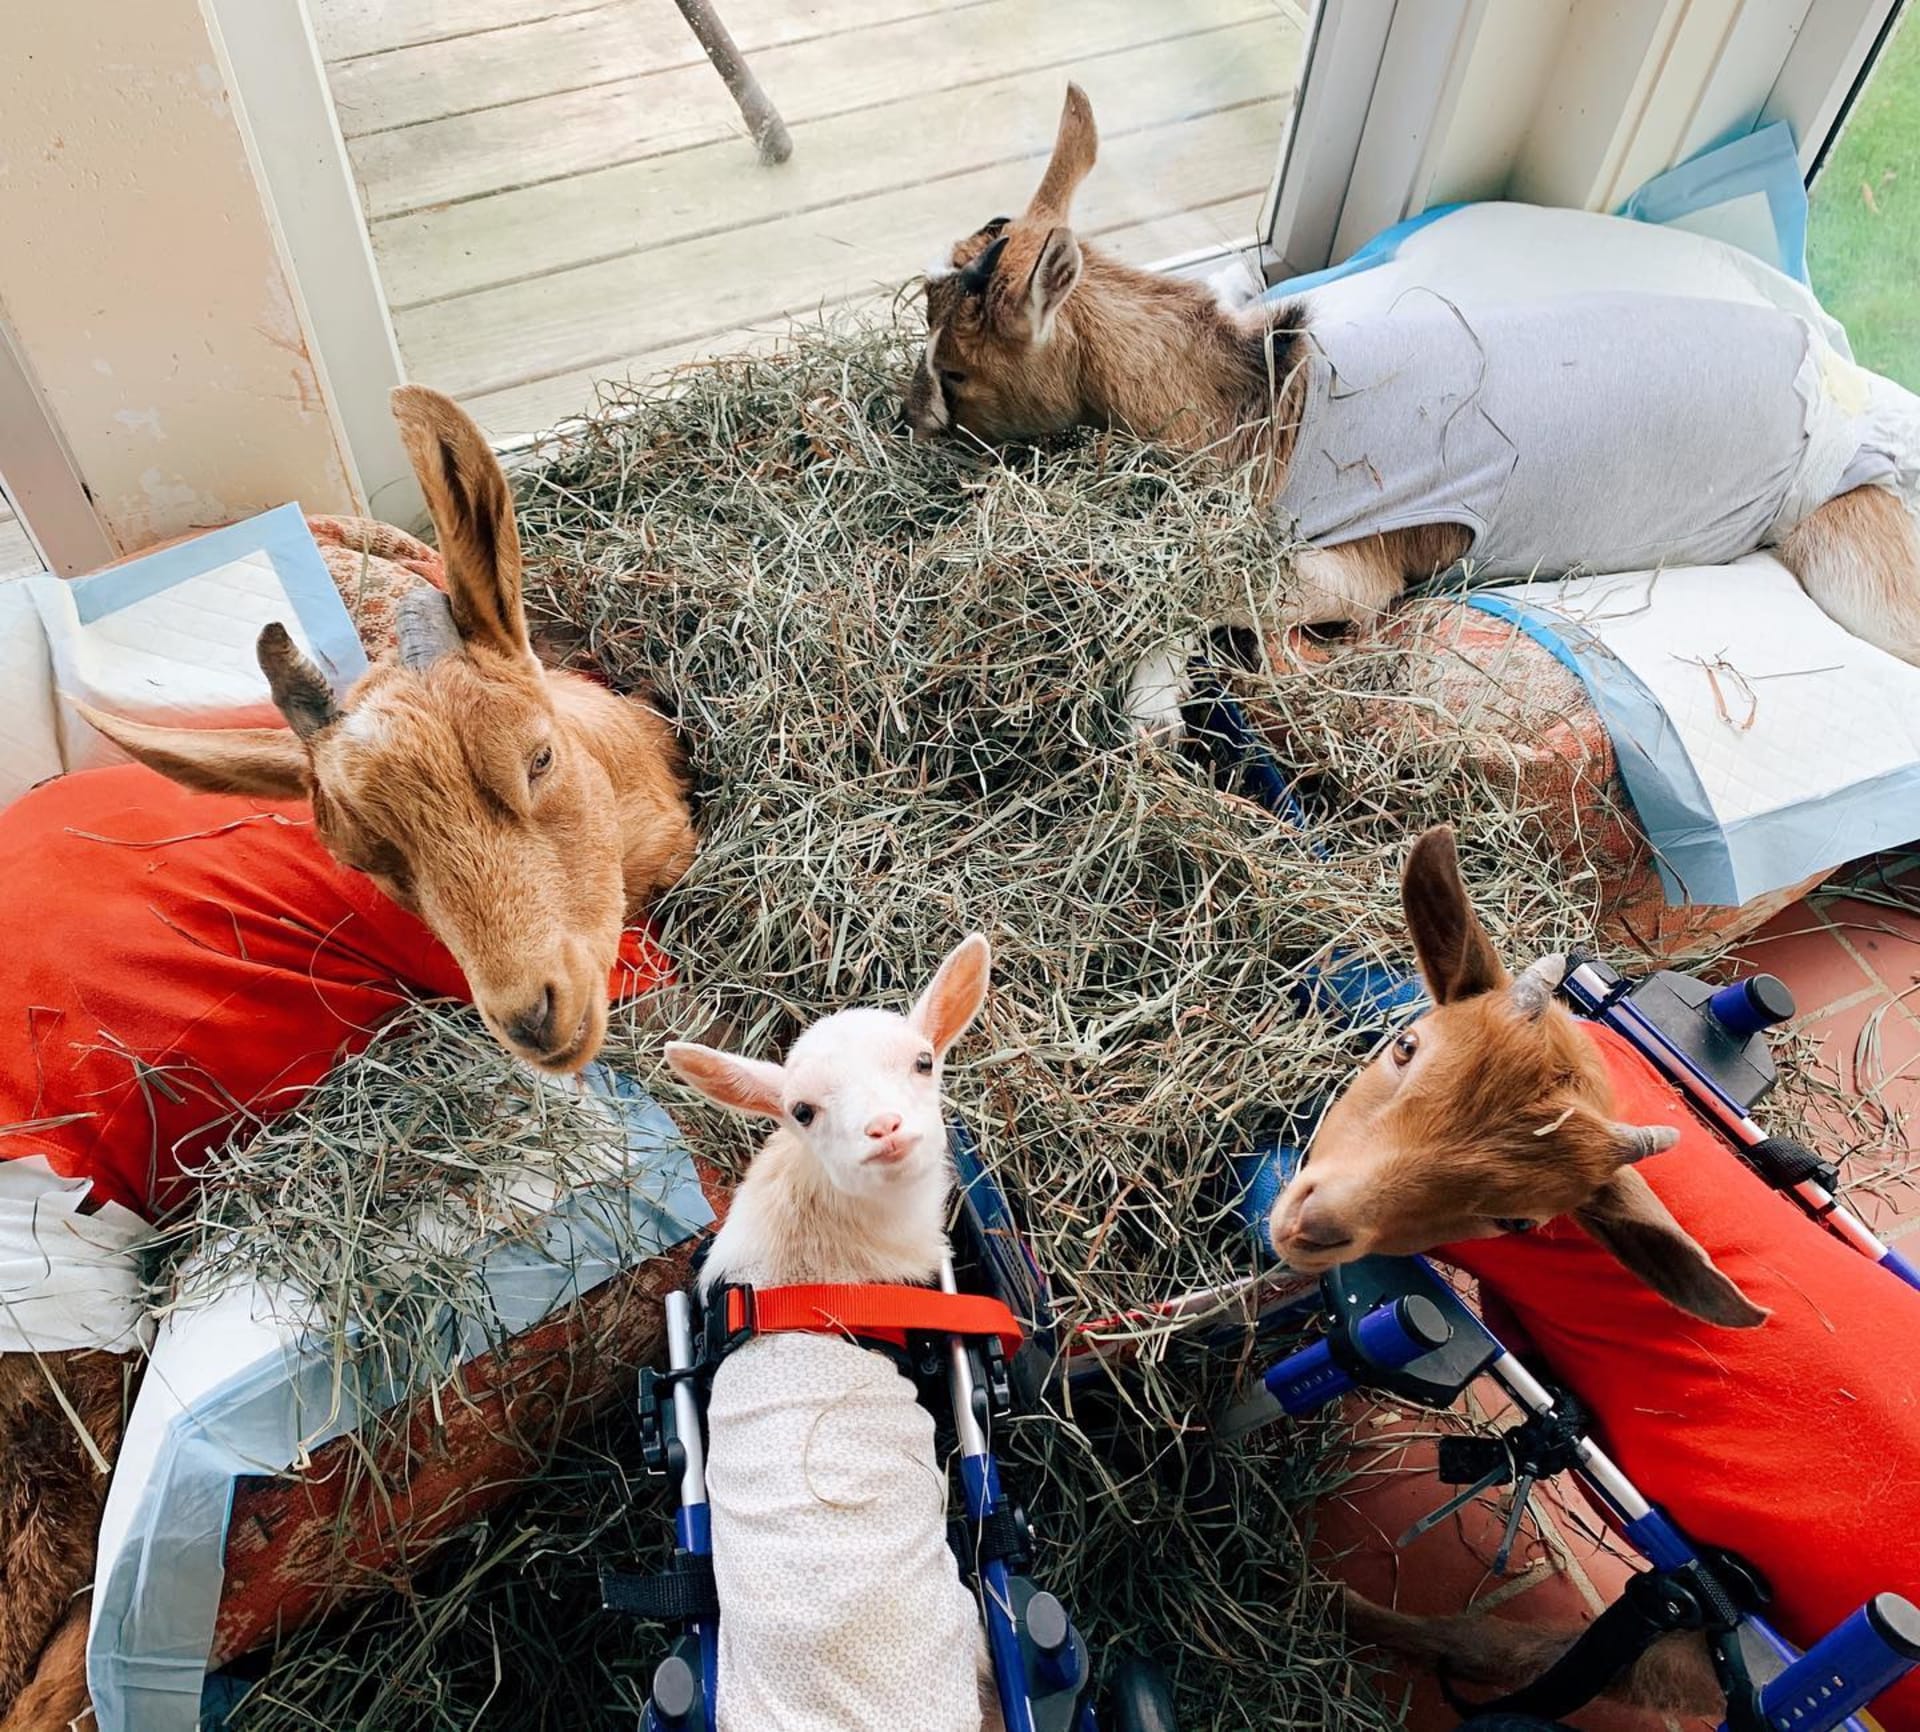 Azyl se stal domovem pro hendikepované kozy, které by jinak byly utraceny. (Zdroj: Facebook Goats of Anarchy)